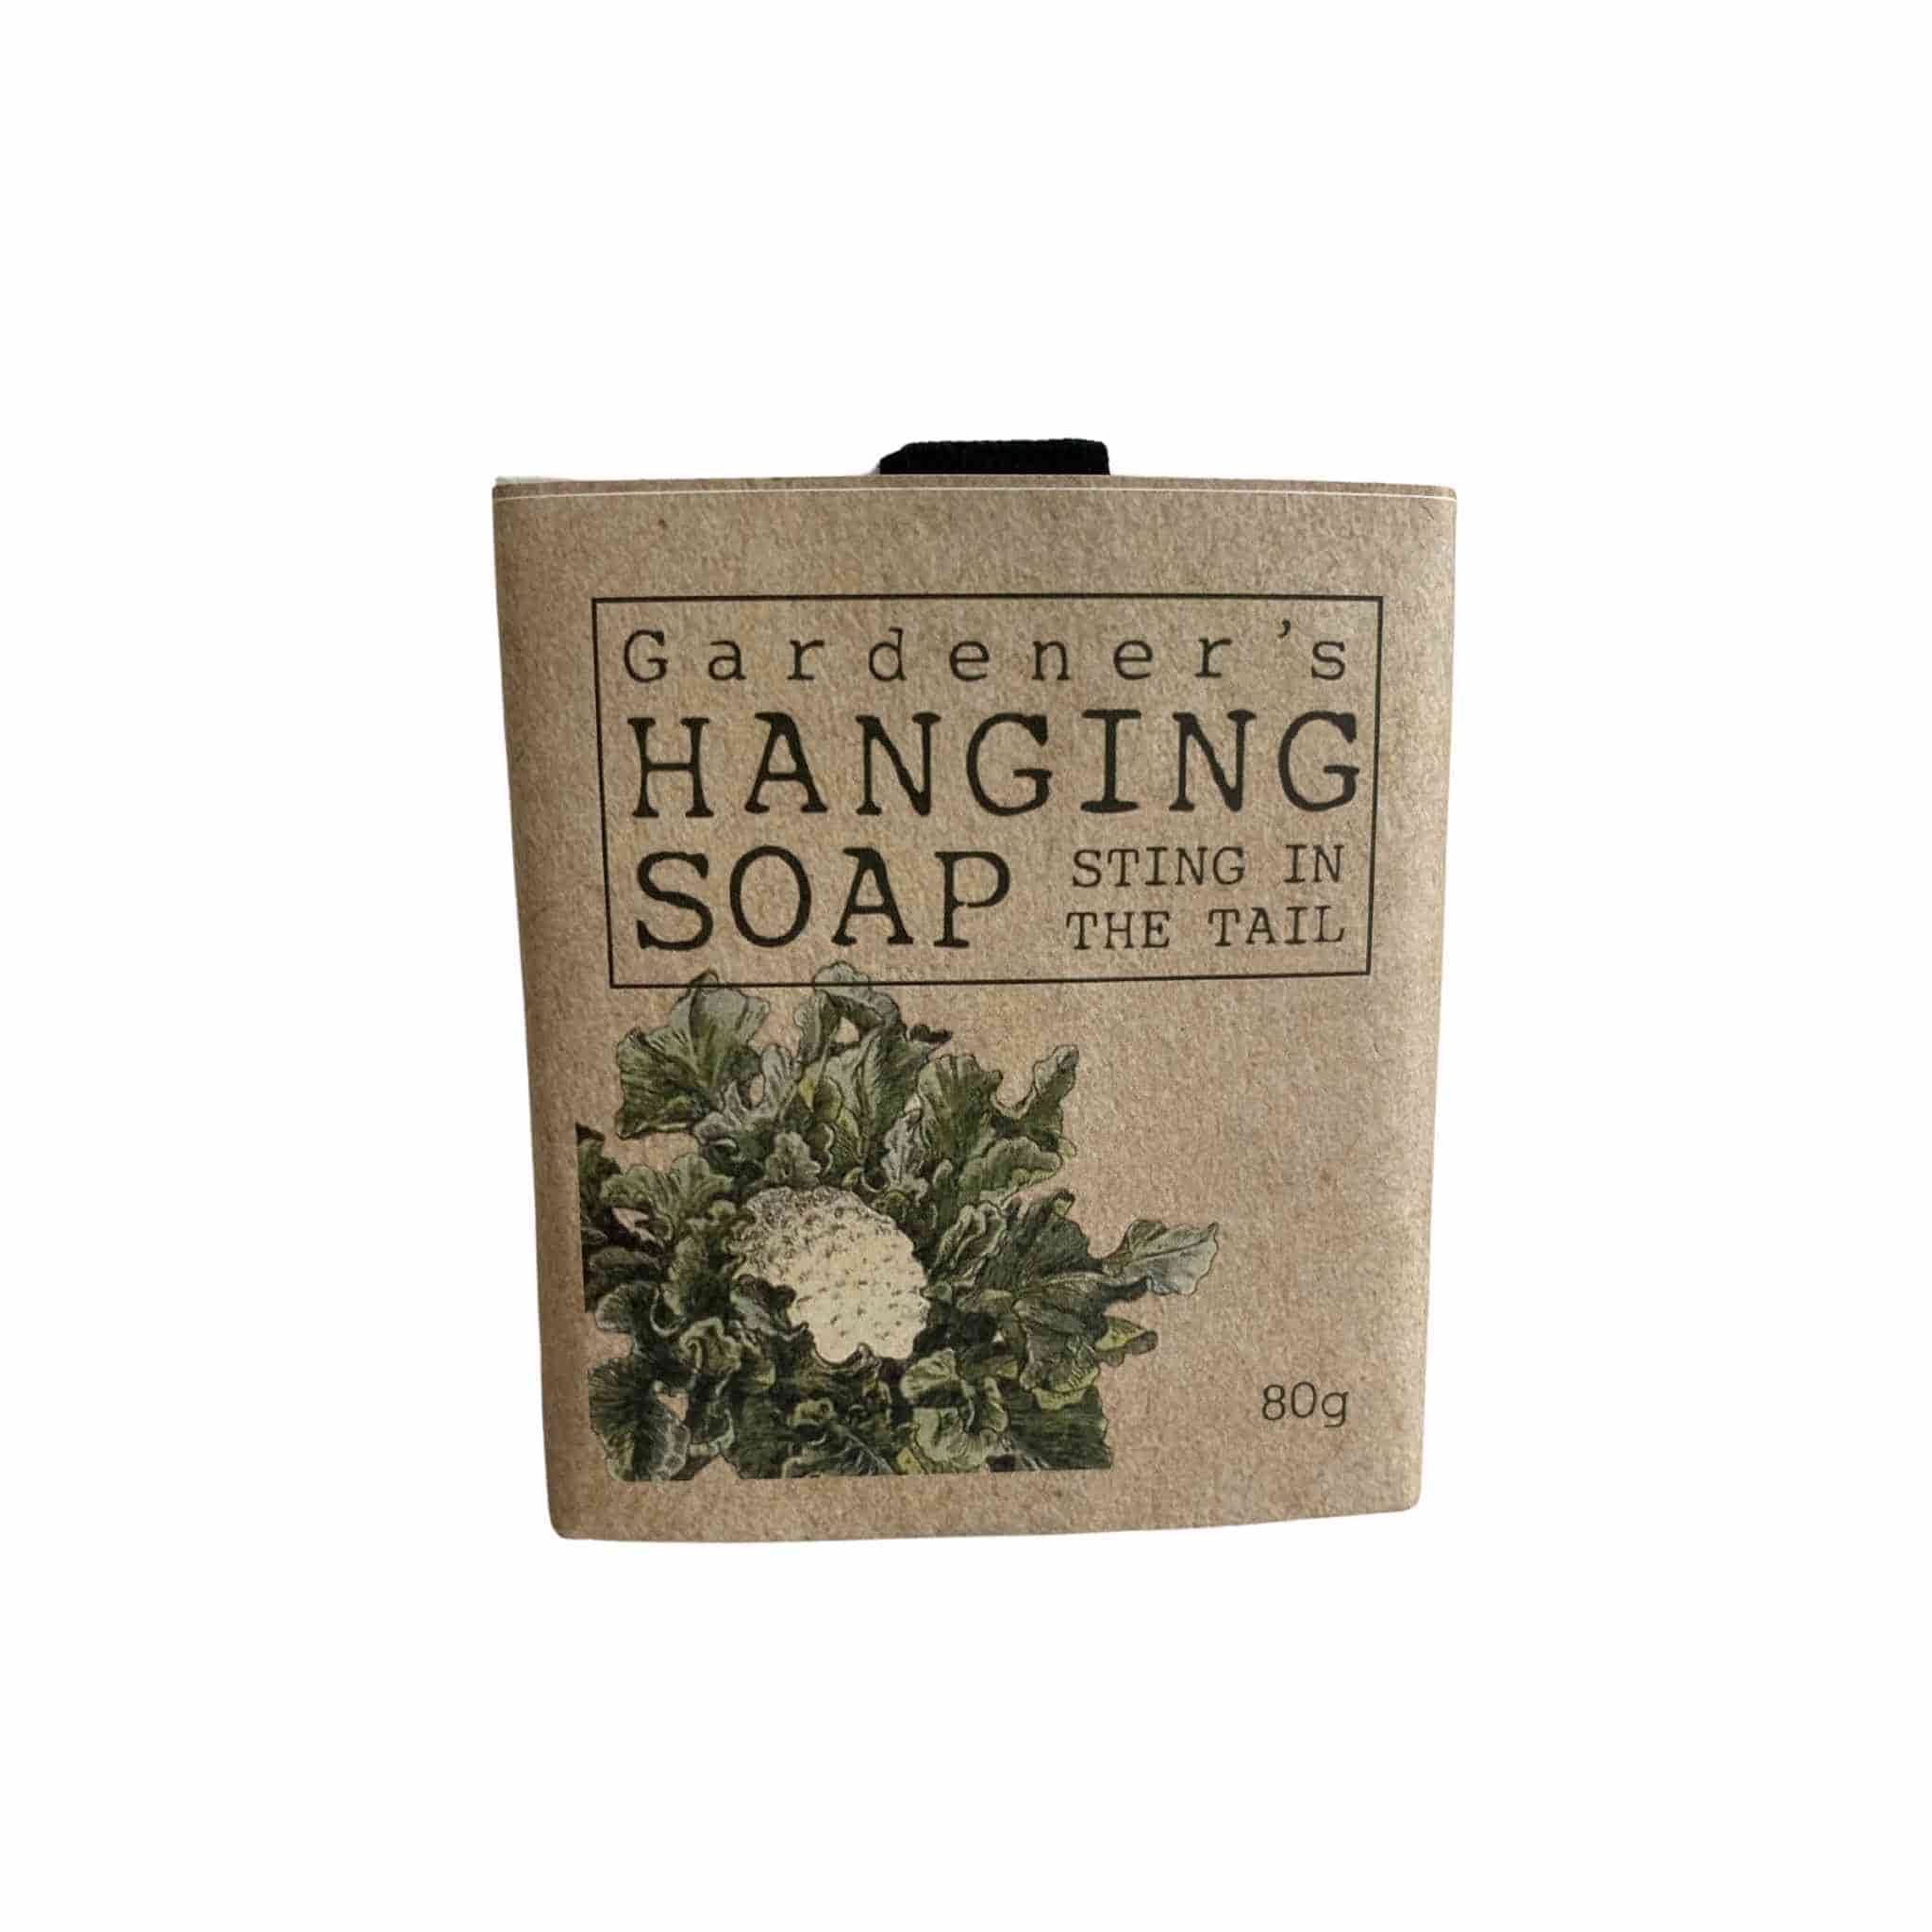 garderner's hanging soap